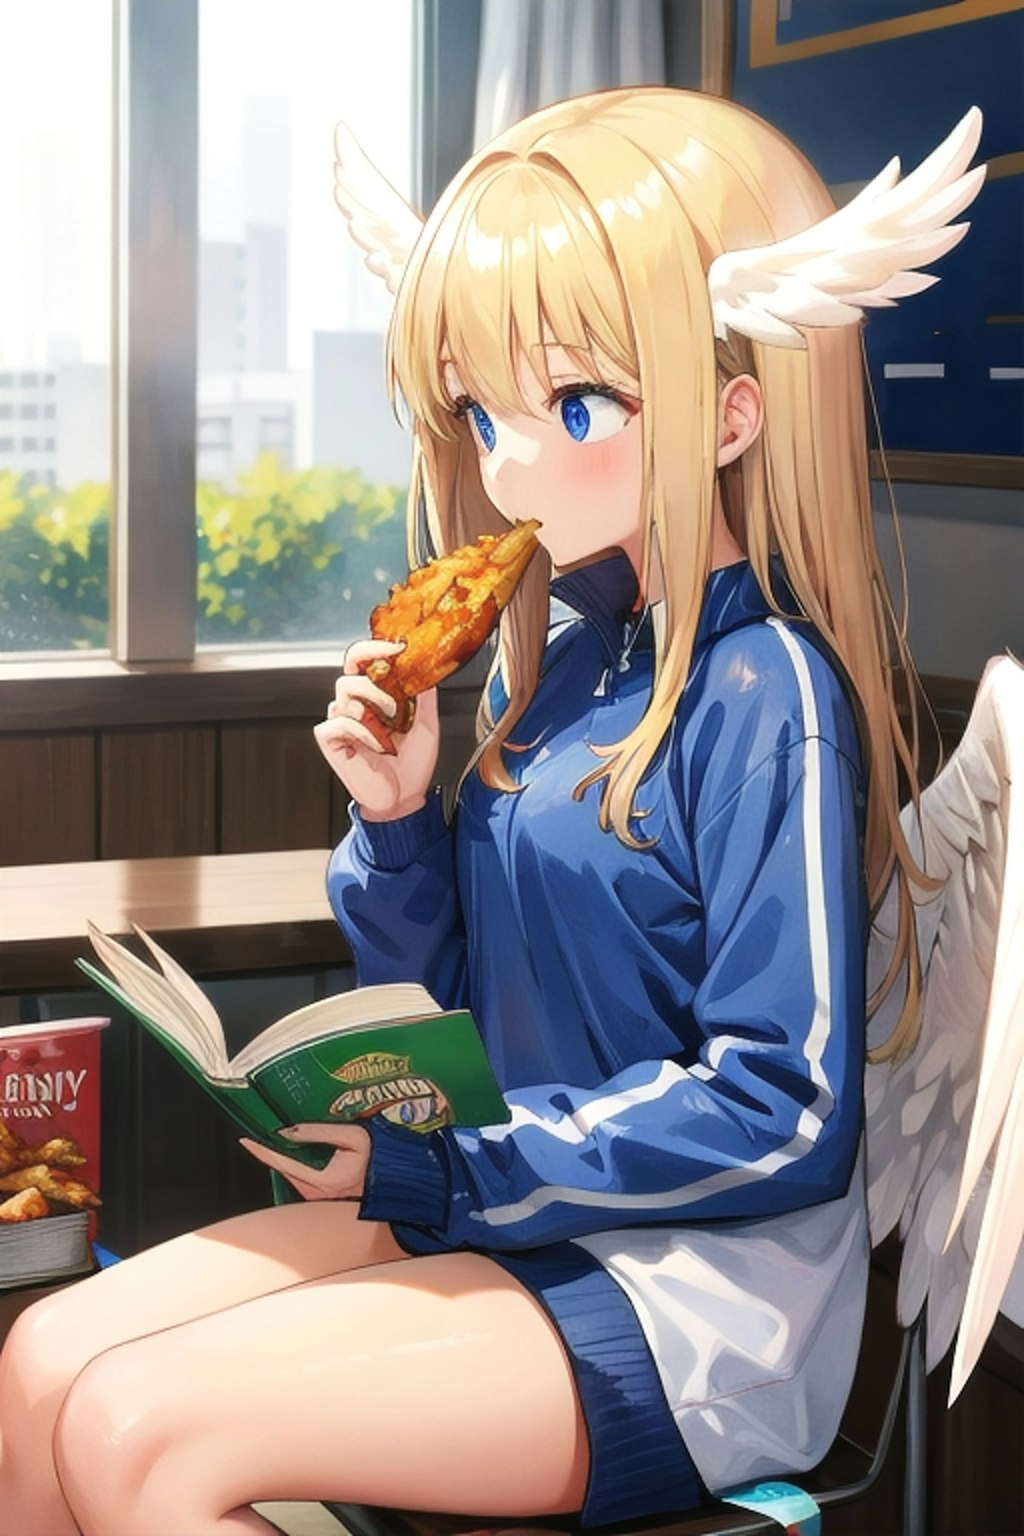 からあげ食べながら、本を読んでるスポーツウェアの天使の子